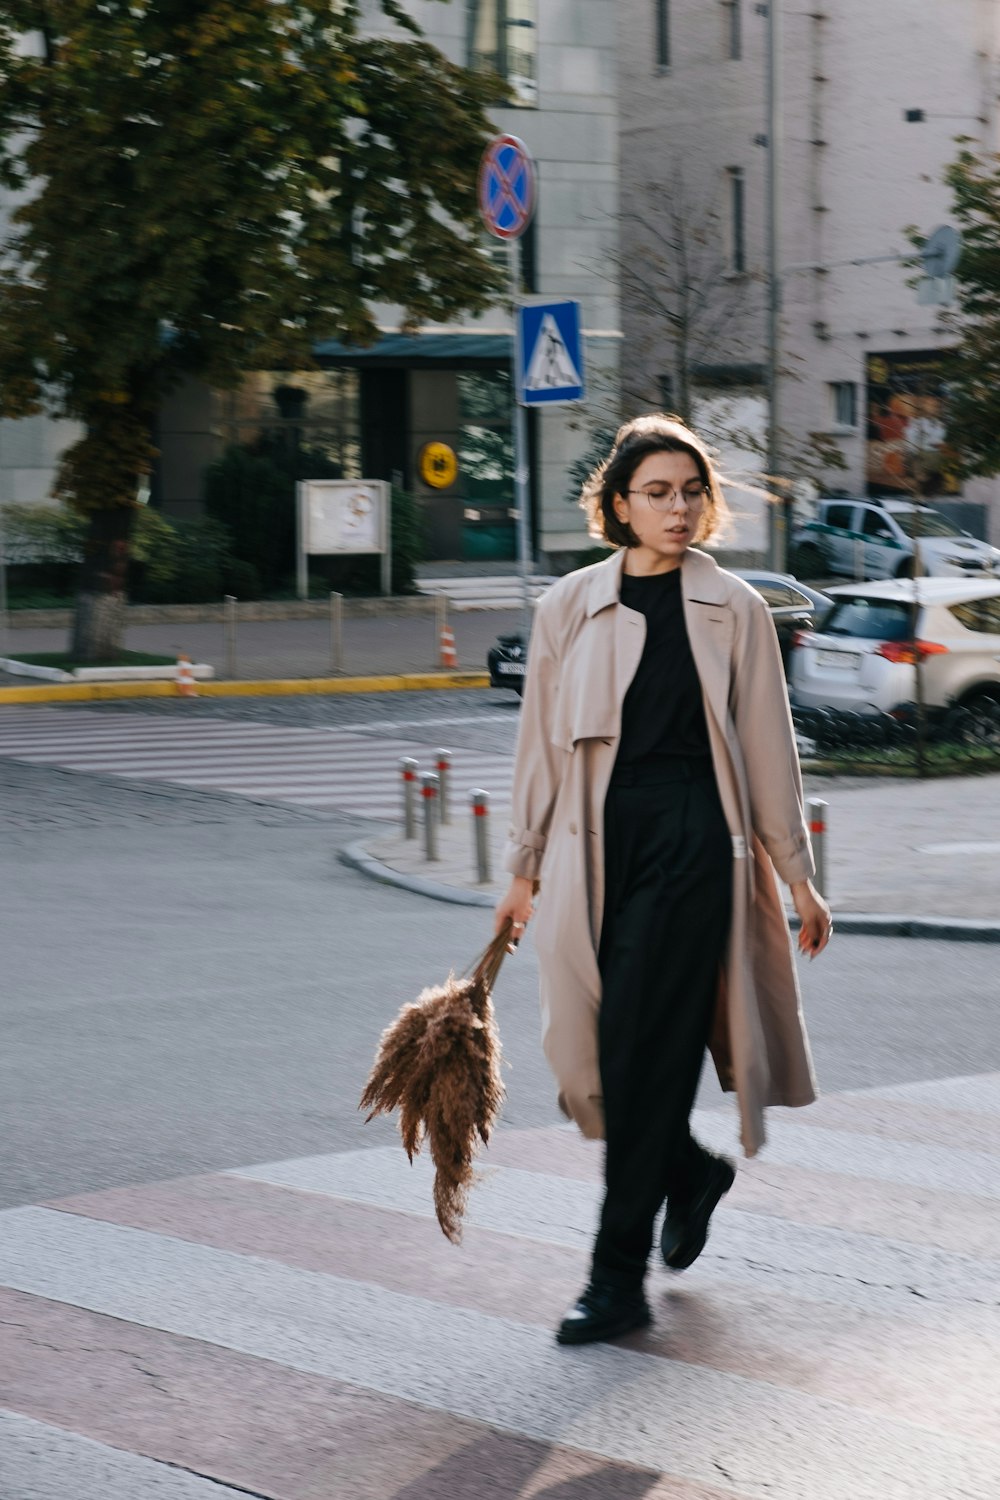 Femme en manteau brun tenant un balai brun debout sur le trottoir pendant la journée